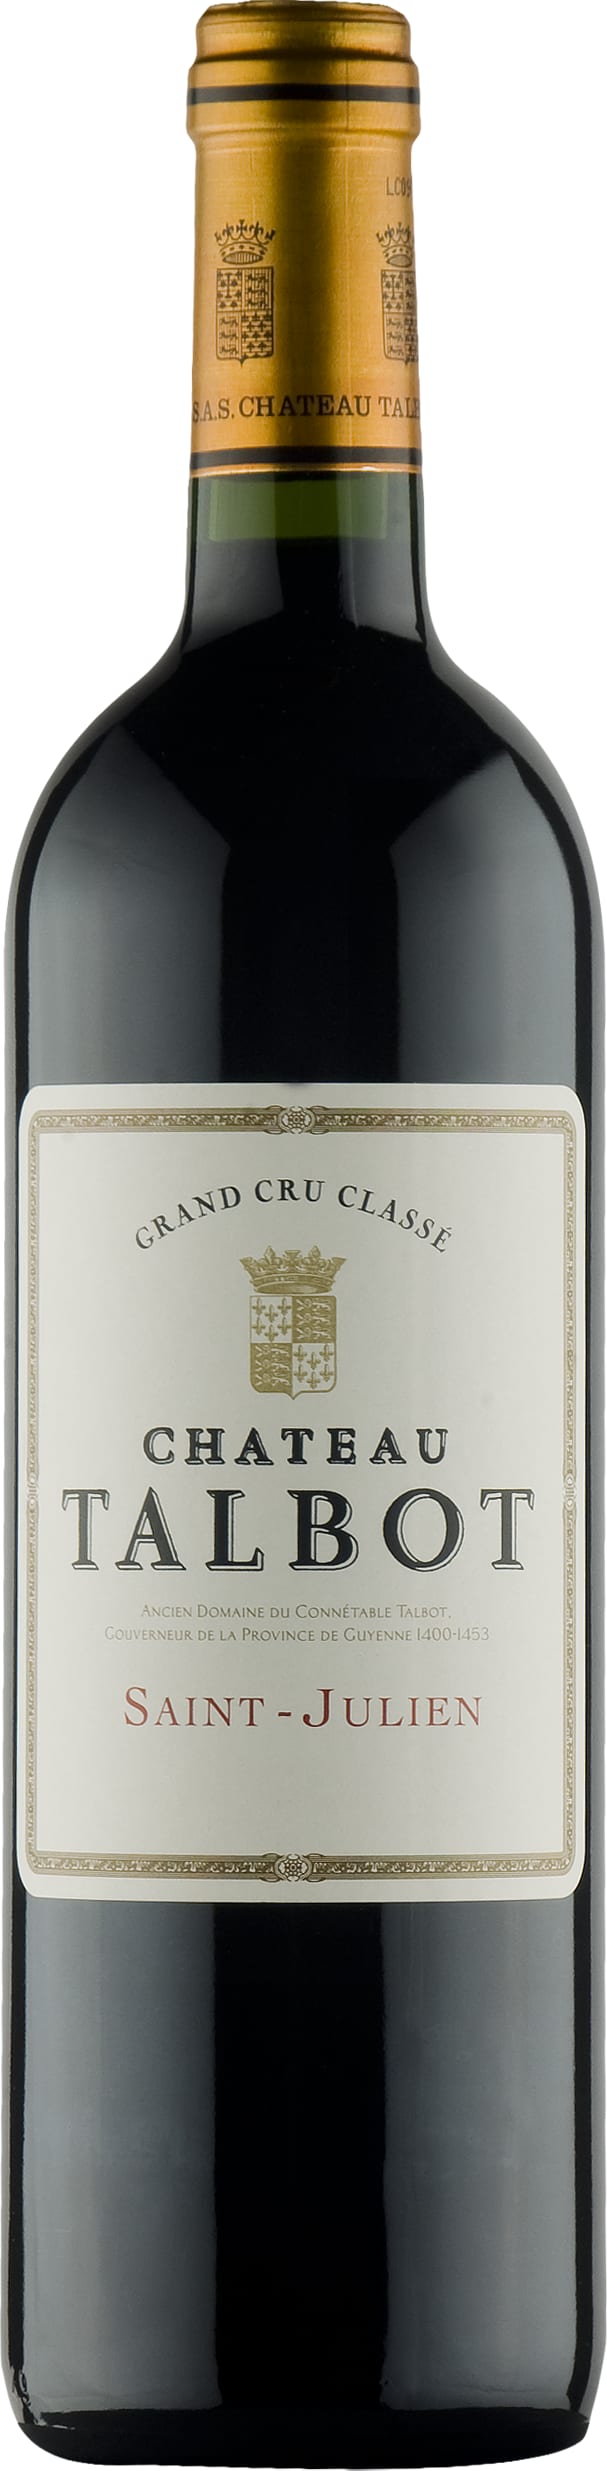 Chateau Talbot Saint-Julien Cru Classe 2017 75cl - Buy Chateau Talbot Wines from GREAT WINES DIRECT wine shop